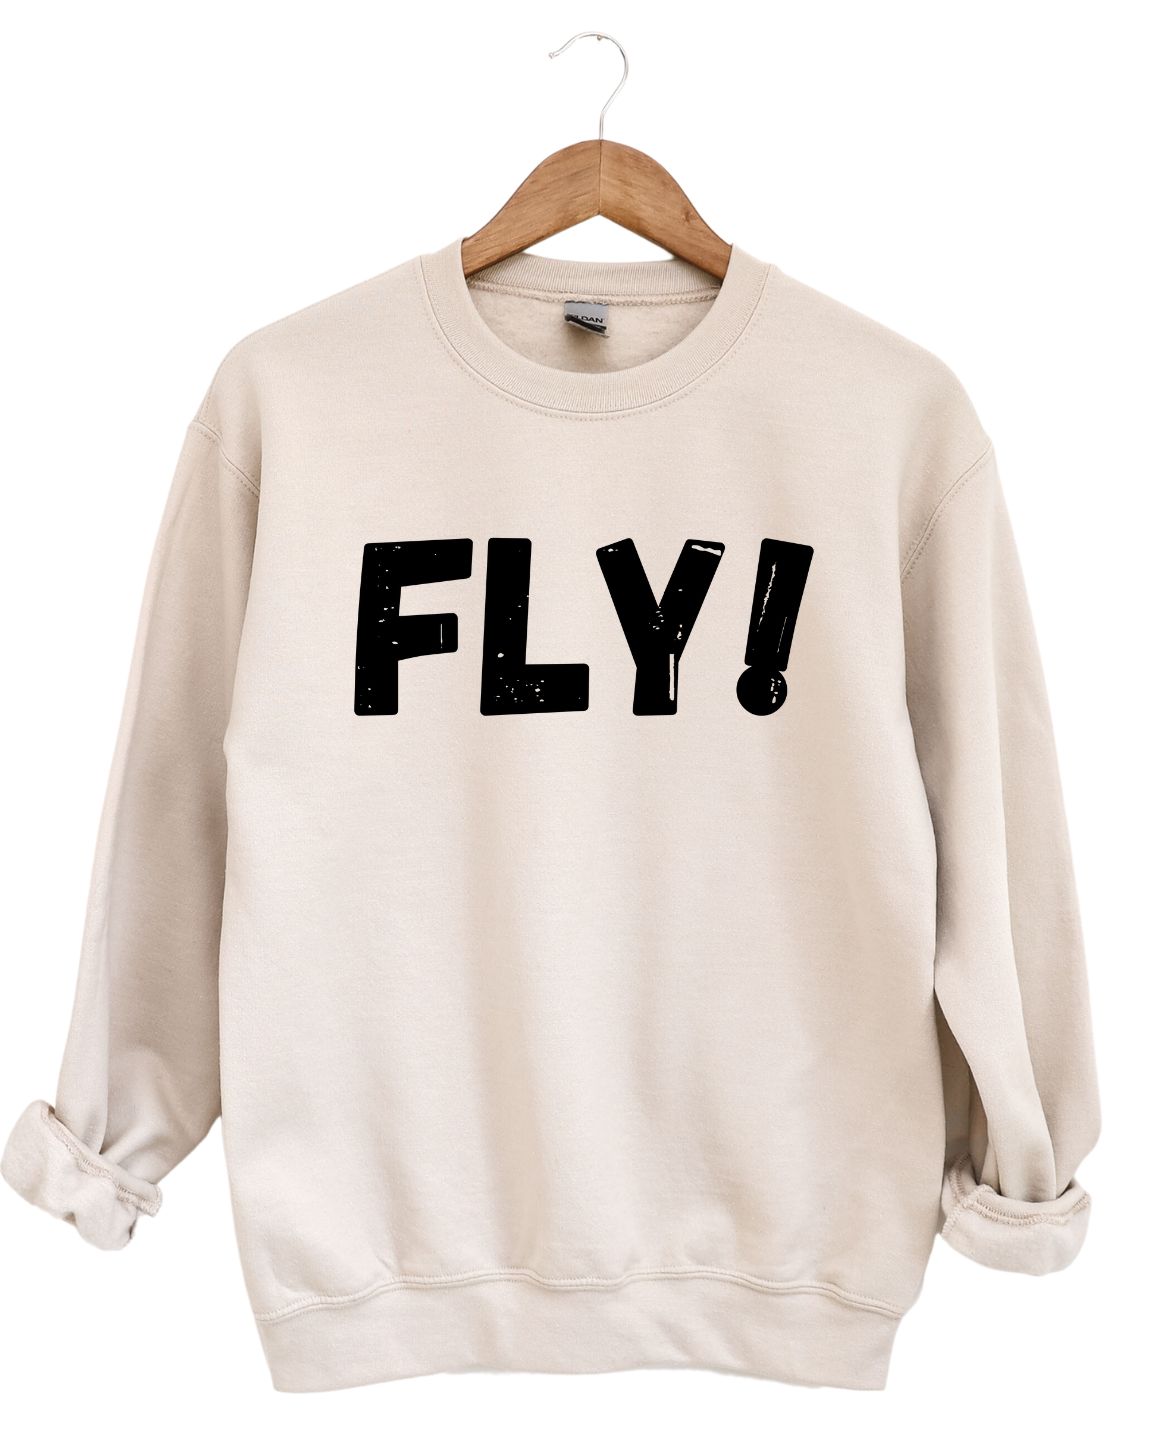 Fly -Sweatshirt